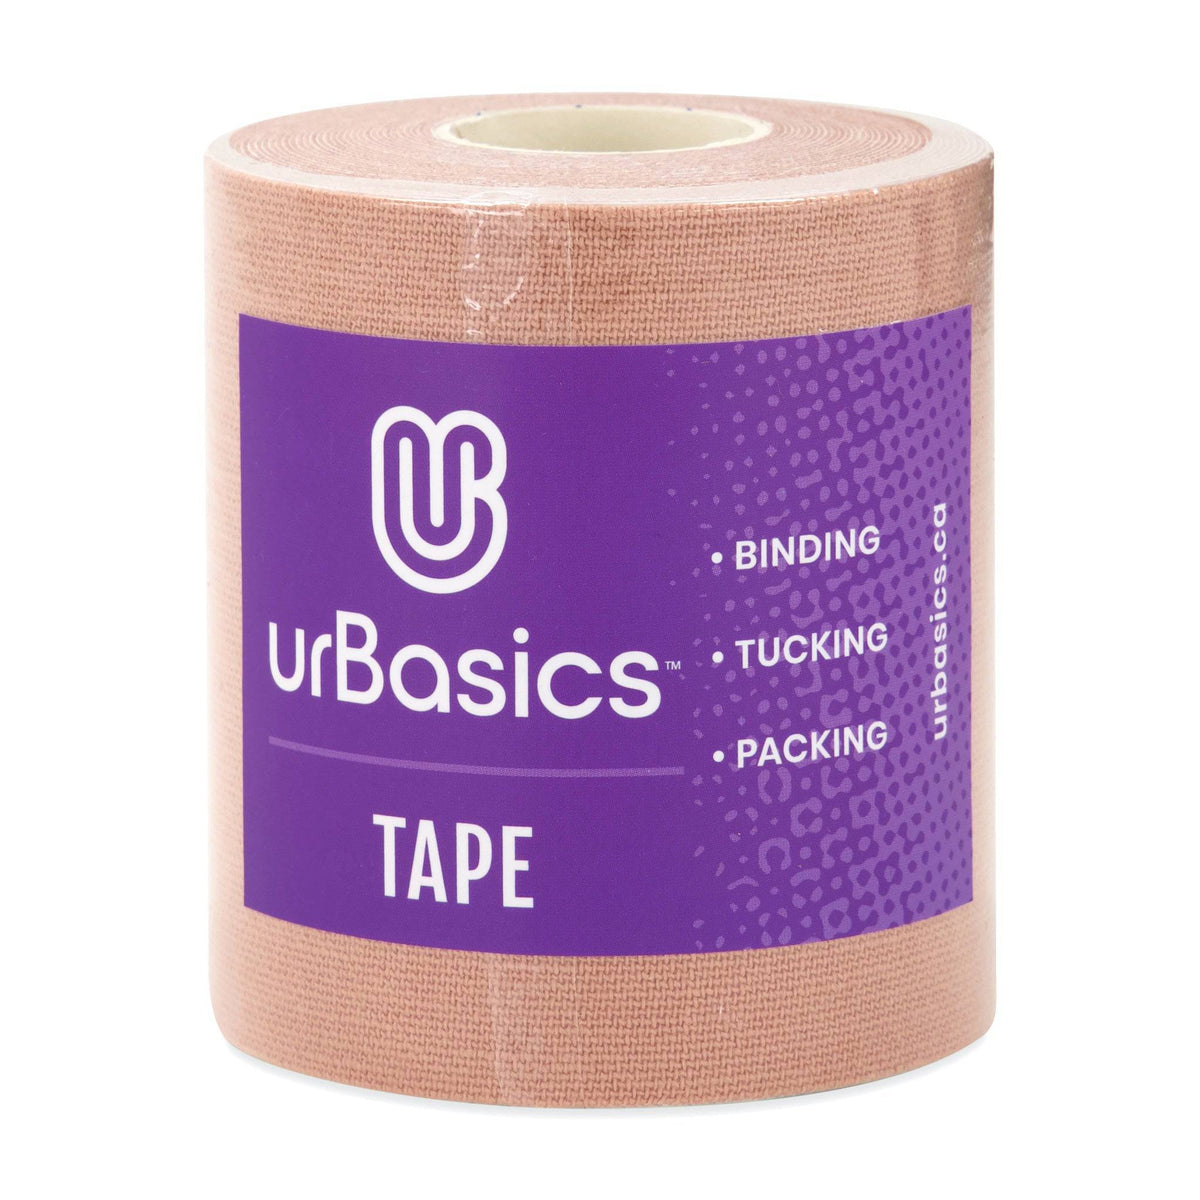 Binding / Packing / Tucking - Tape